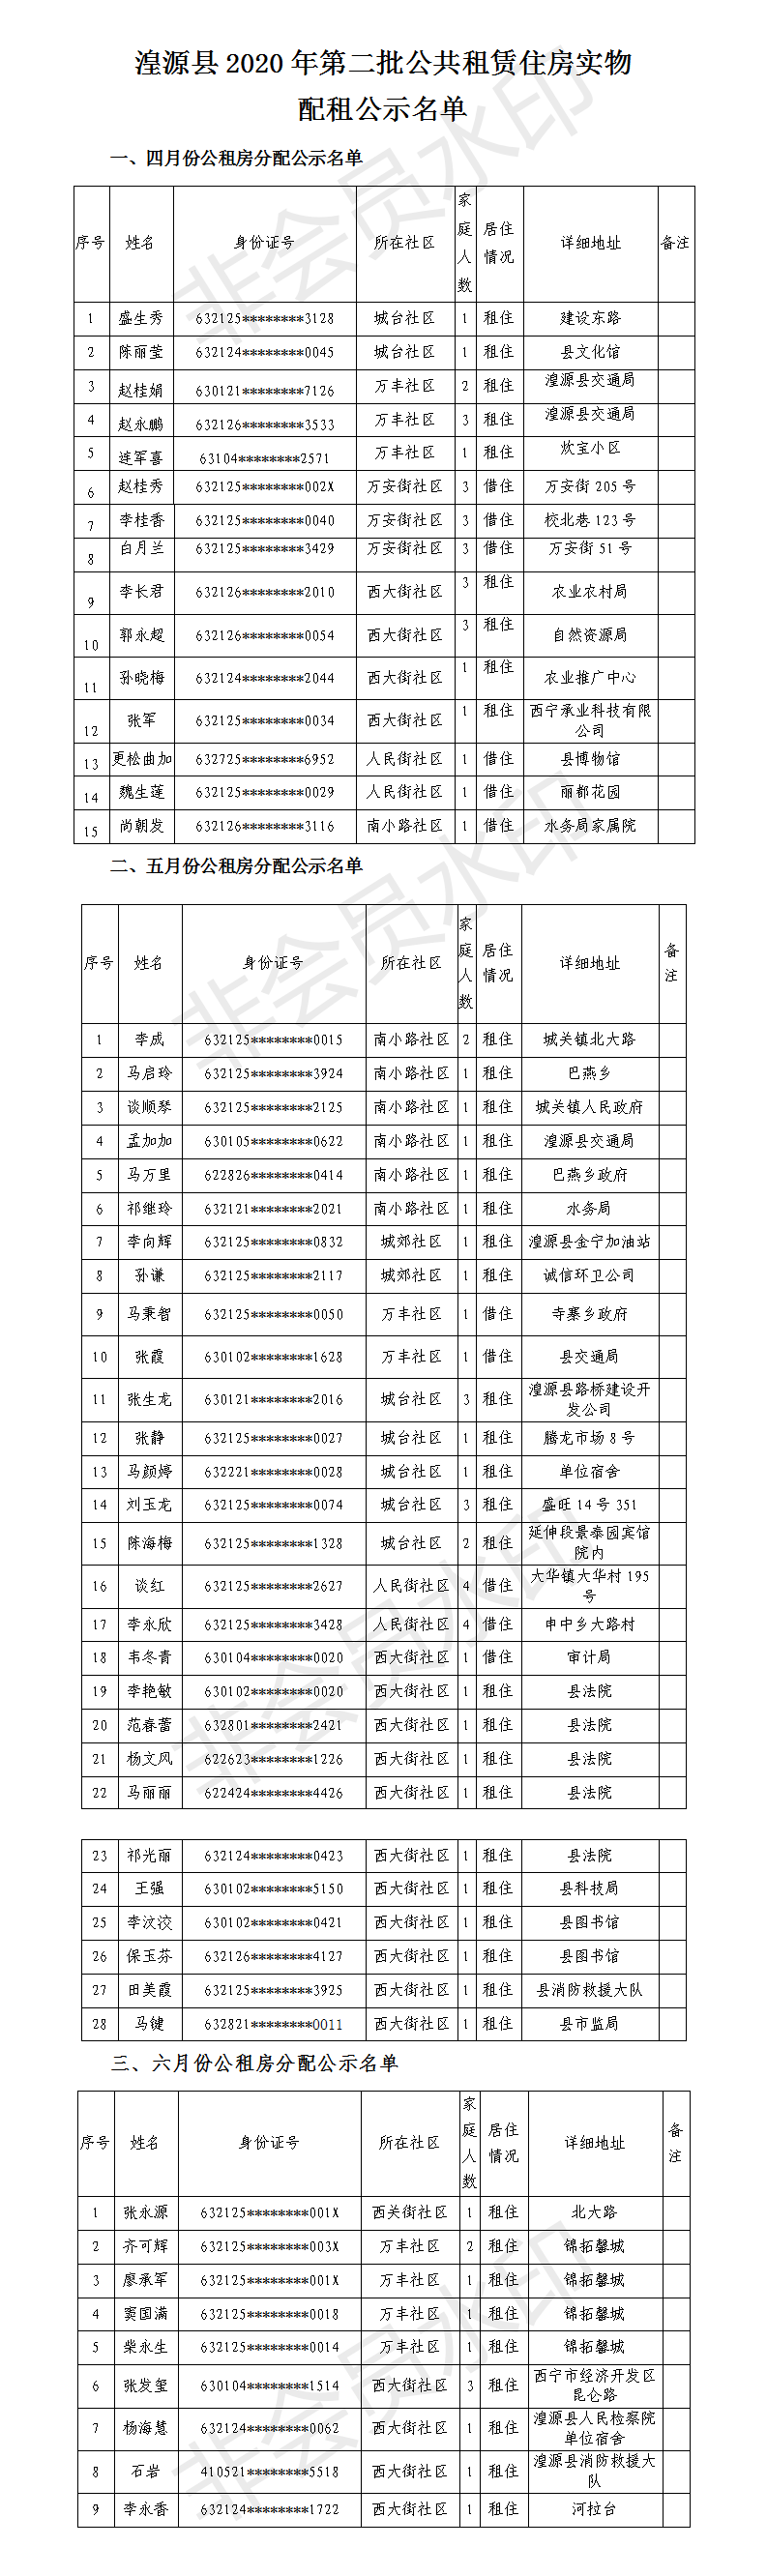 湟源县2020年第二批公共租赁住房公示名单.png